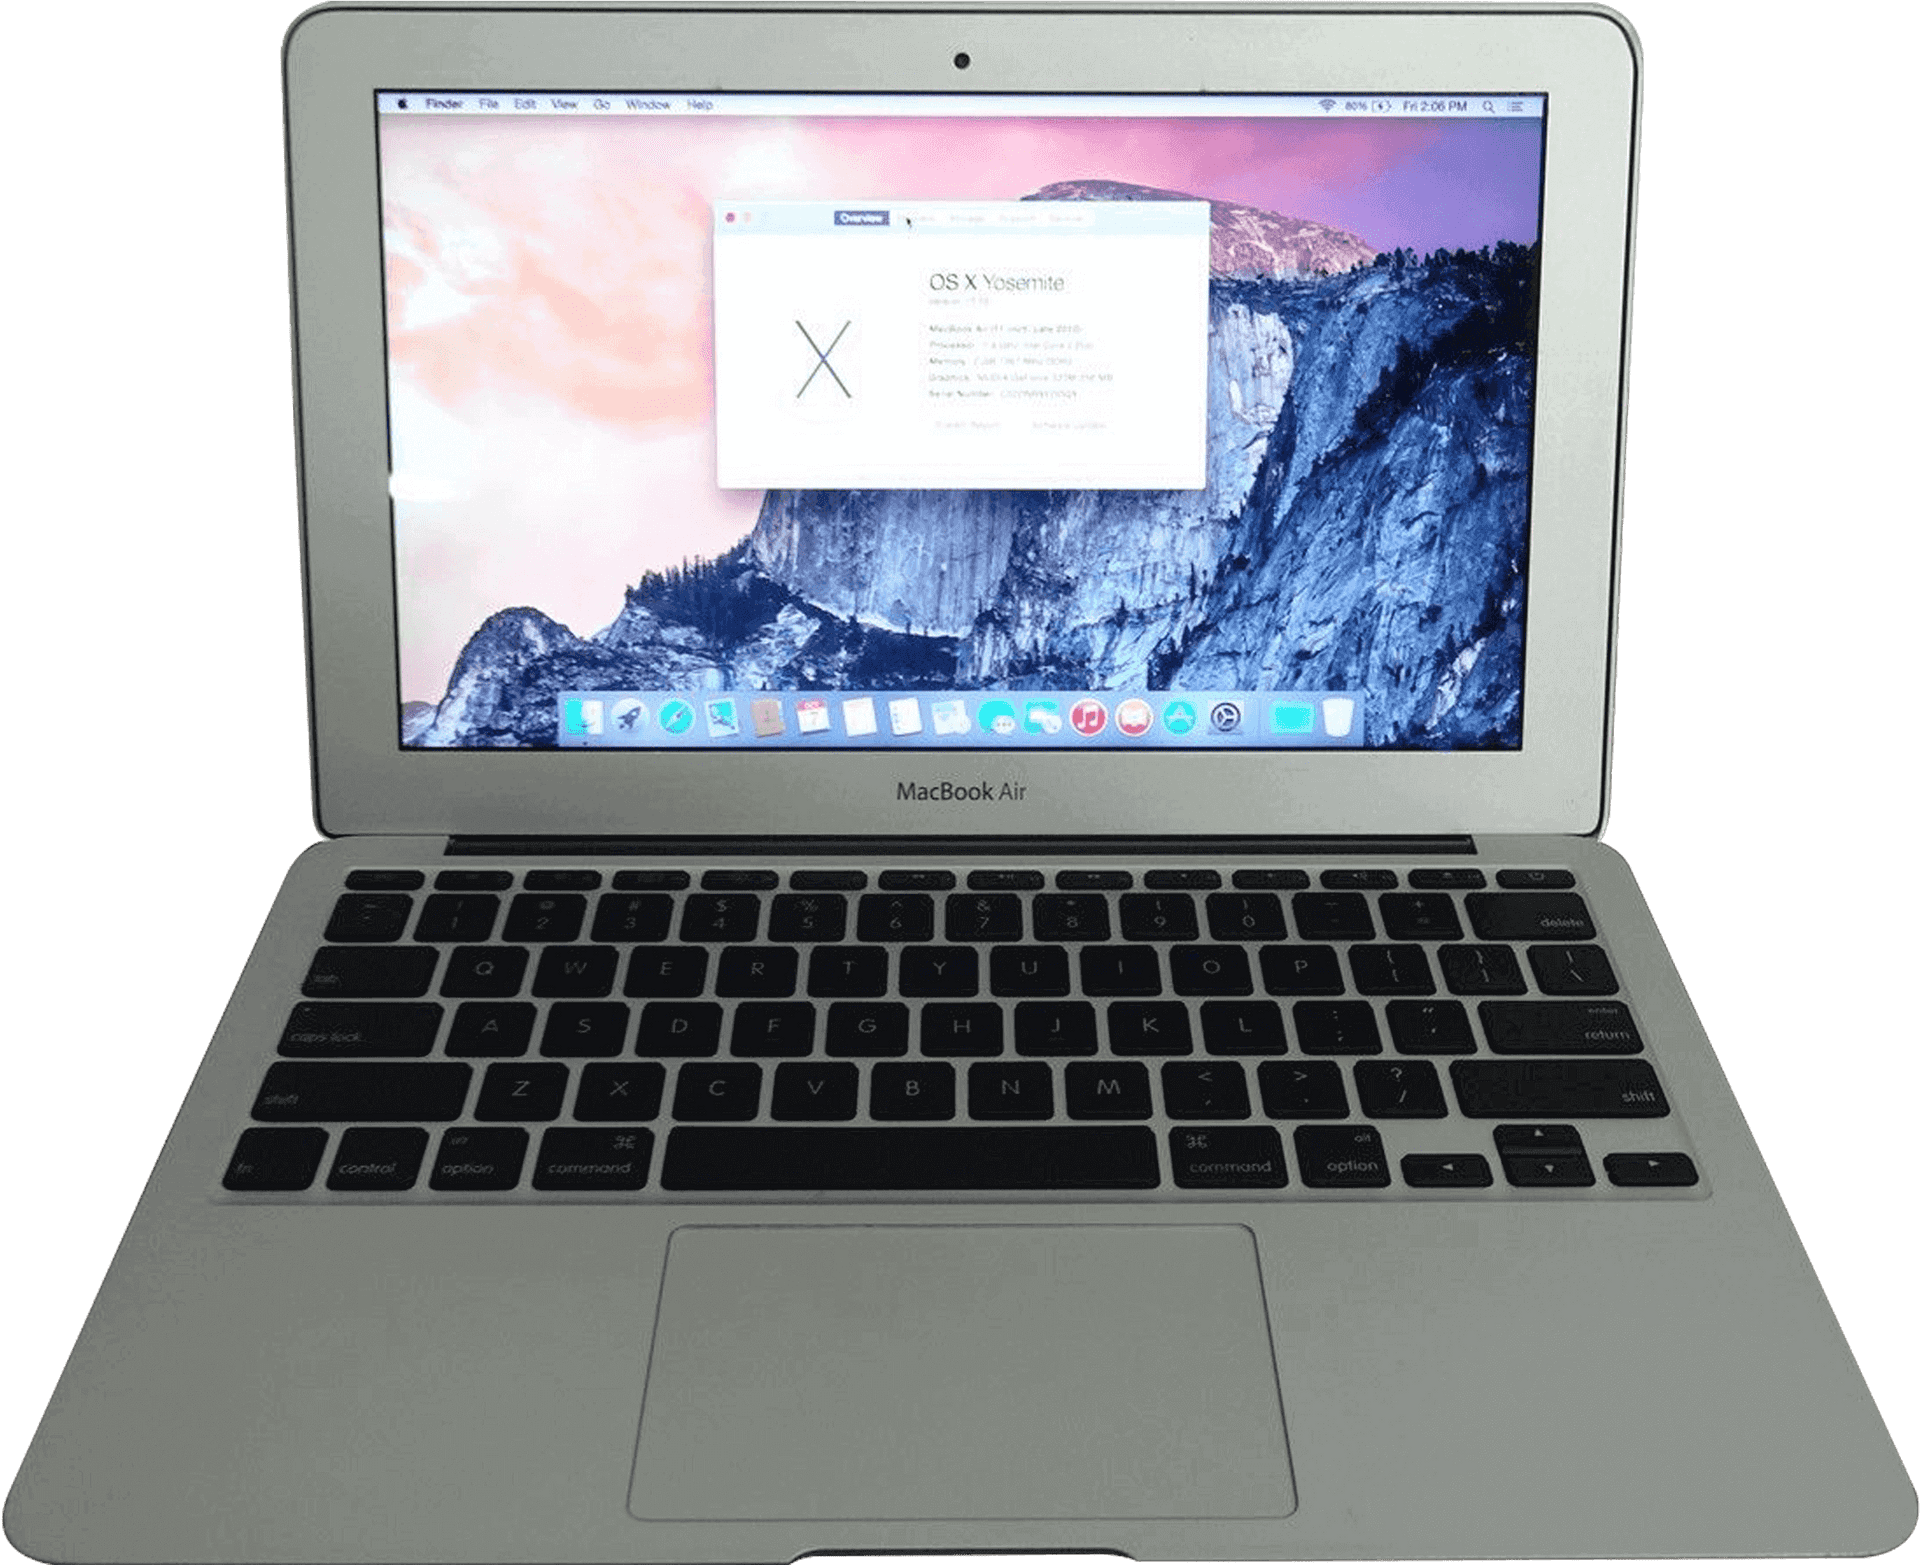 Download Mac Book Air O S X Yosemite | Wallpapers.com